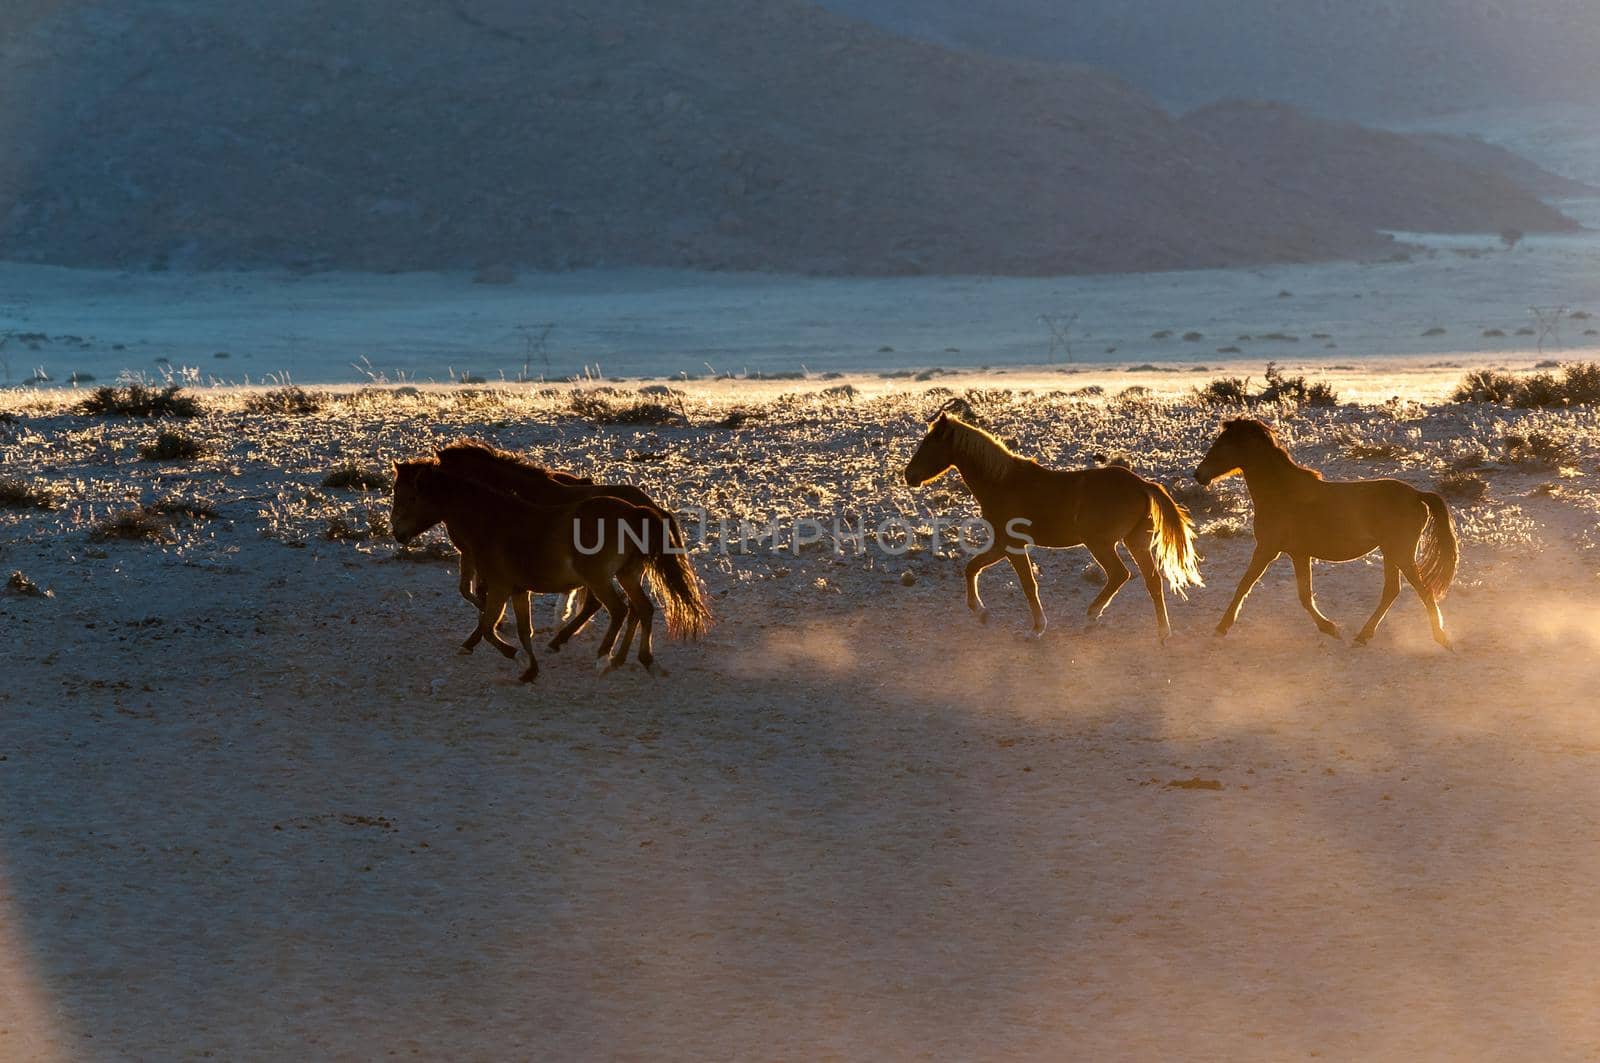 Wild horses of the Namib running at sunrise. Photo taken at Garub